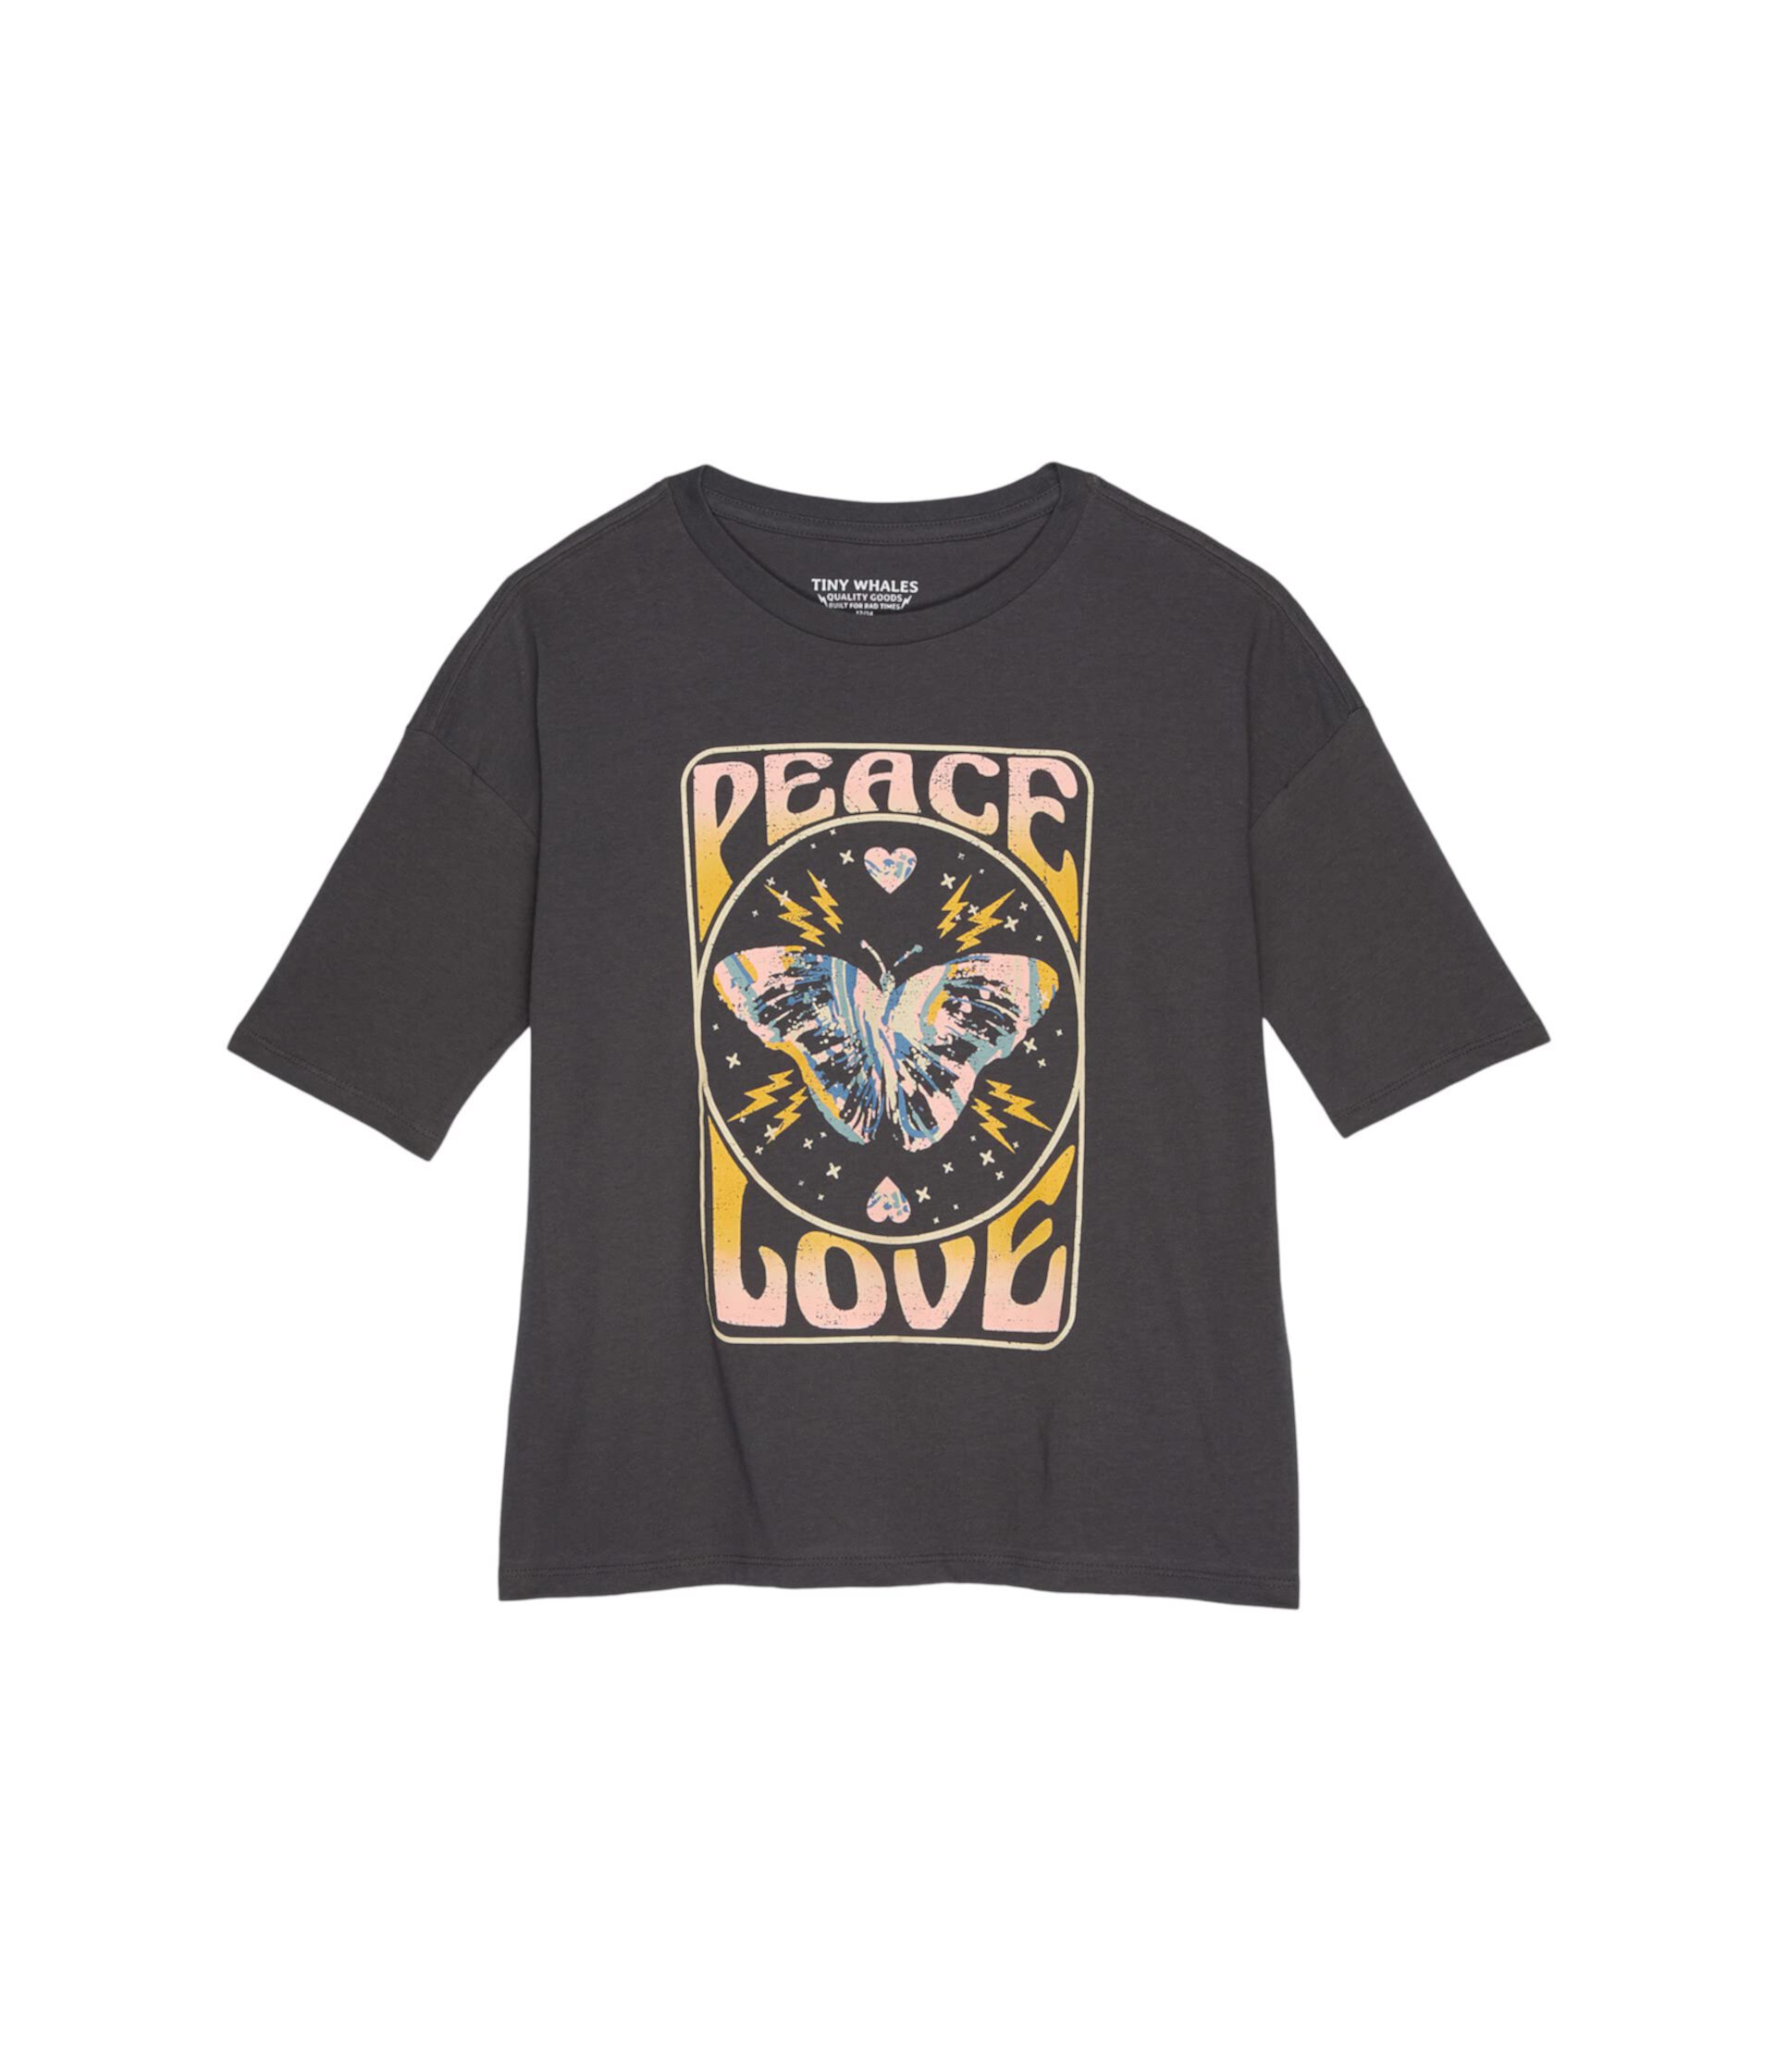 Суперразмерная футболка Peace and Love (для малышей/маленьких детей/больших детей) Tiny Whales